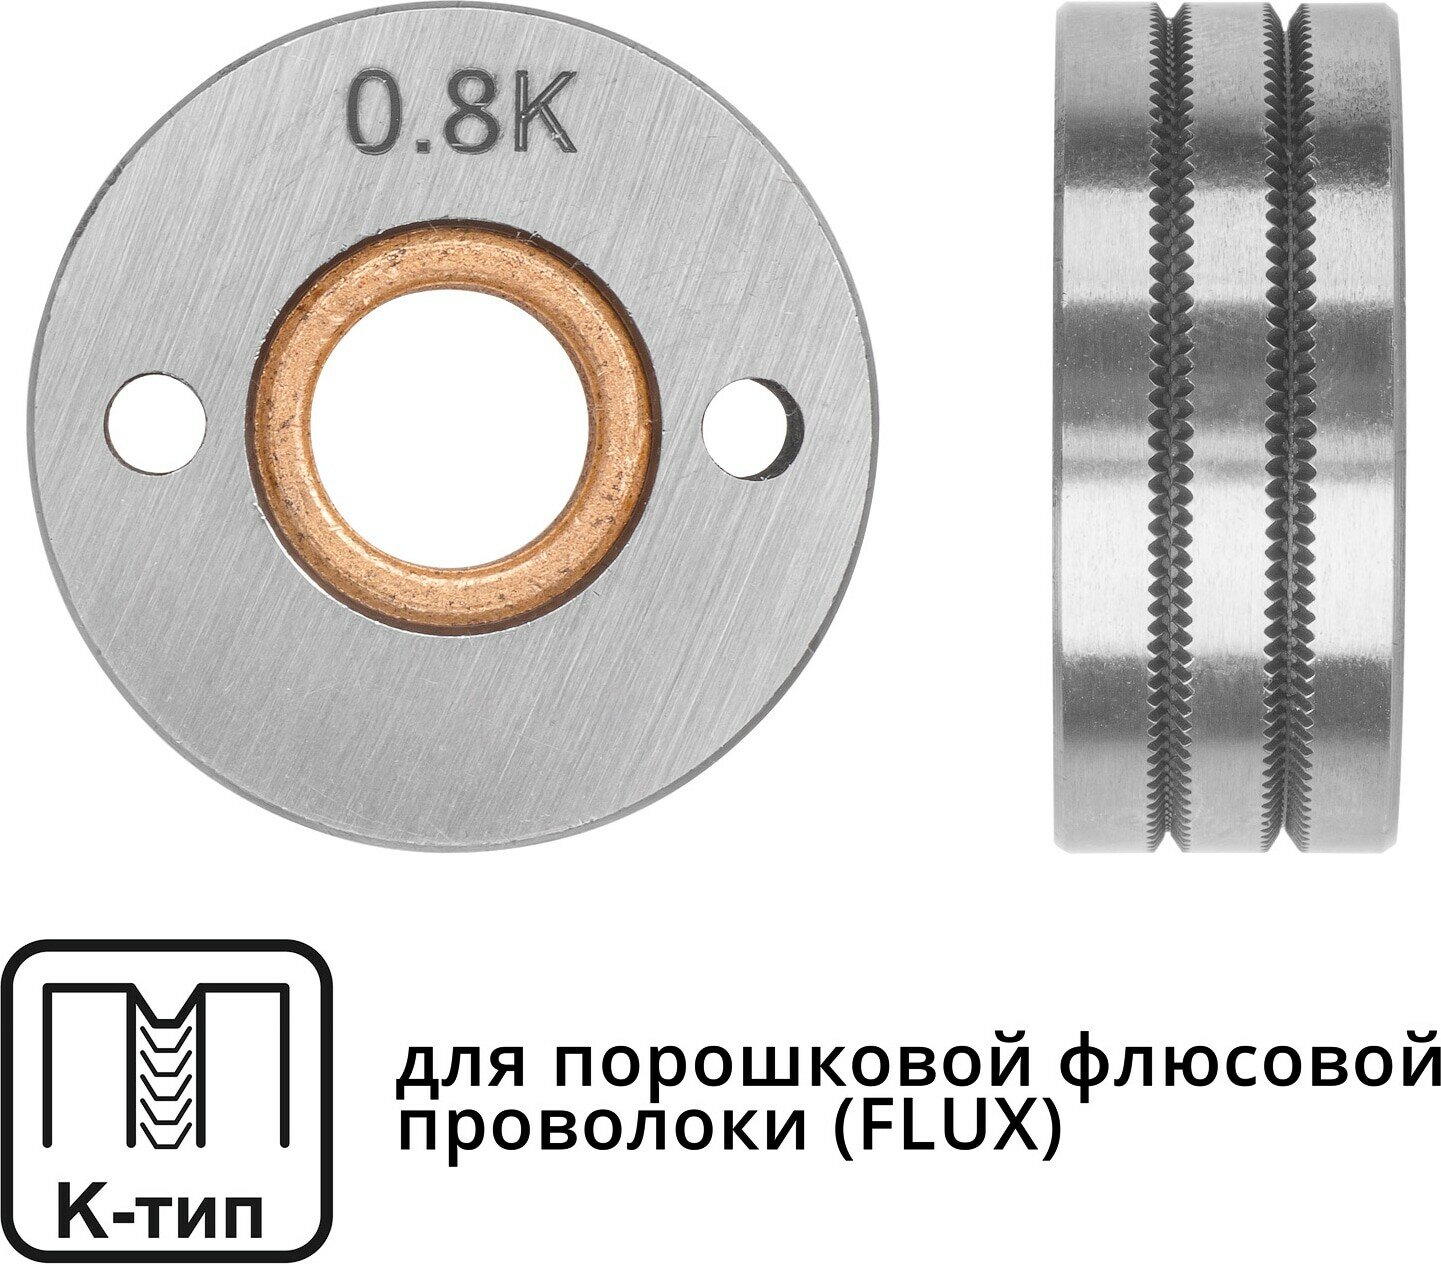 Ролик подающий ф 30/10 мм, шир. 12 мм, проволока ф 0,8-1,0 мм (K-тип) (для флюсовой (FLUX) проволоки) (WA-2435) (SOLARIS)